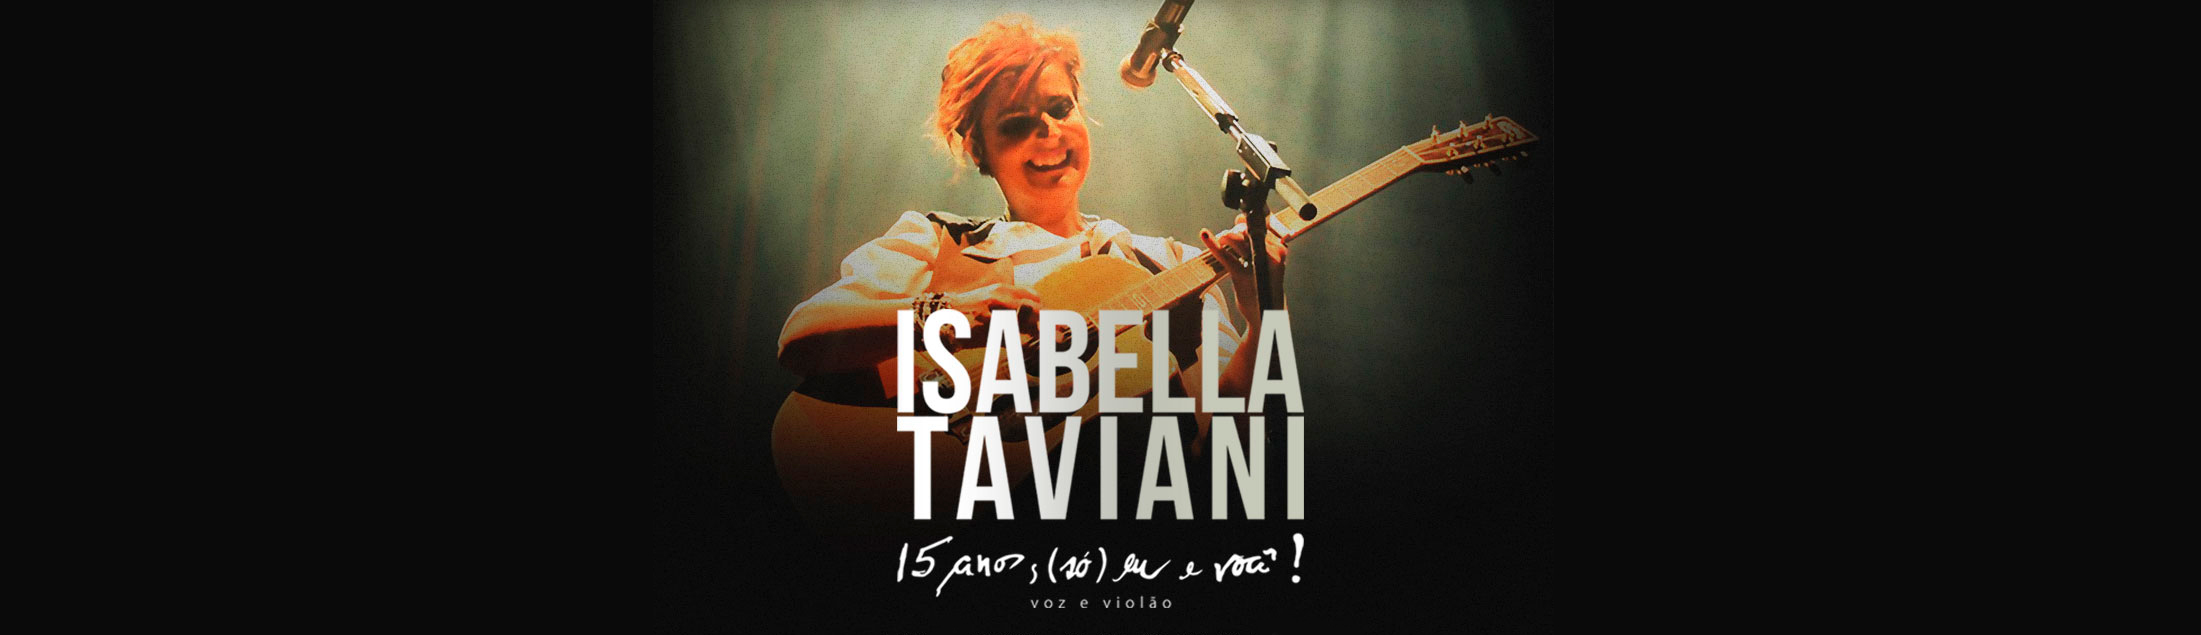 Isabella Taviani – 15 anos – (Só) Eu e você